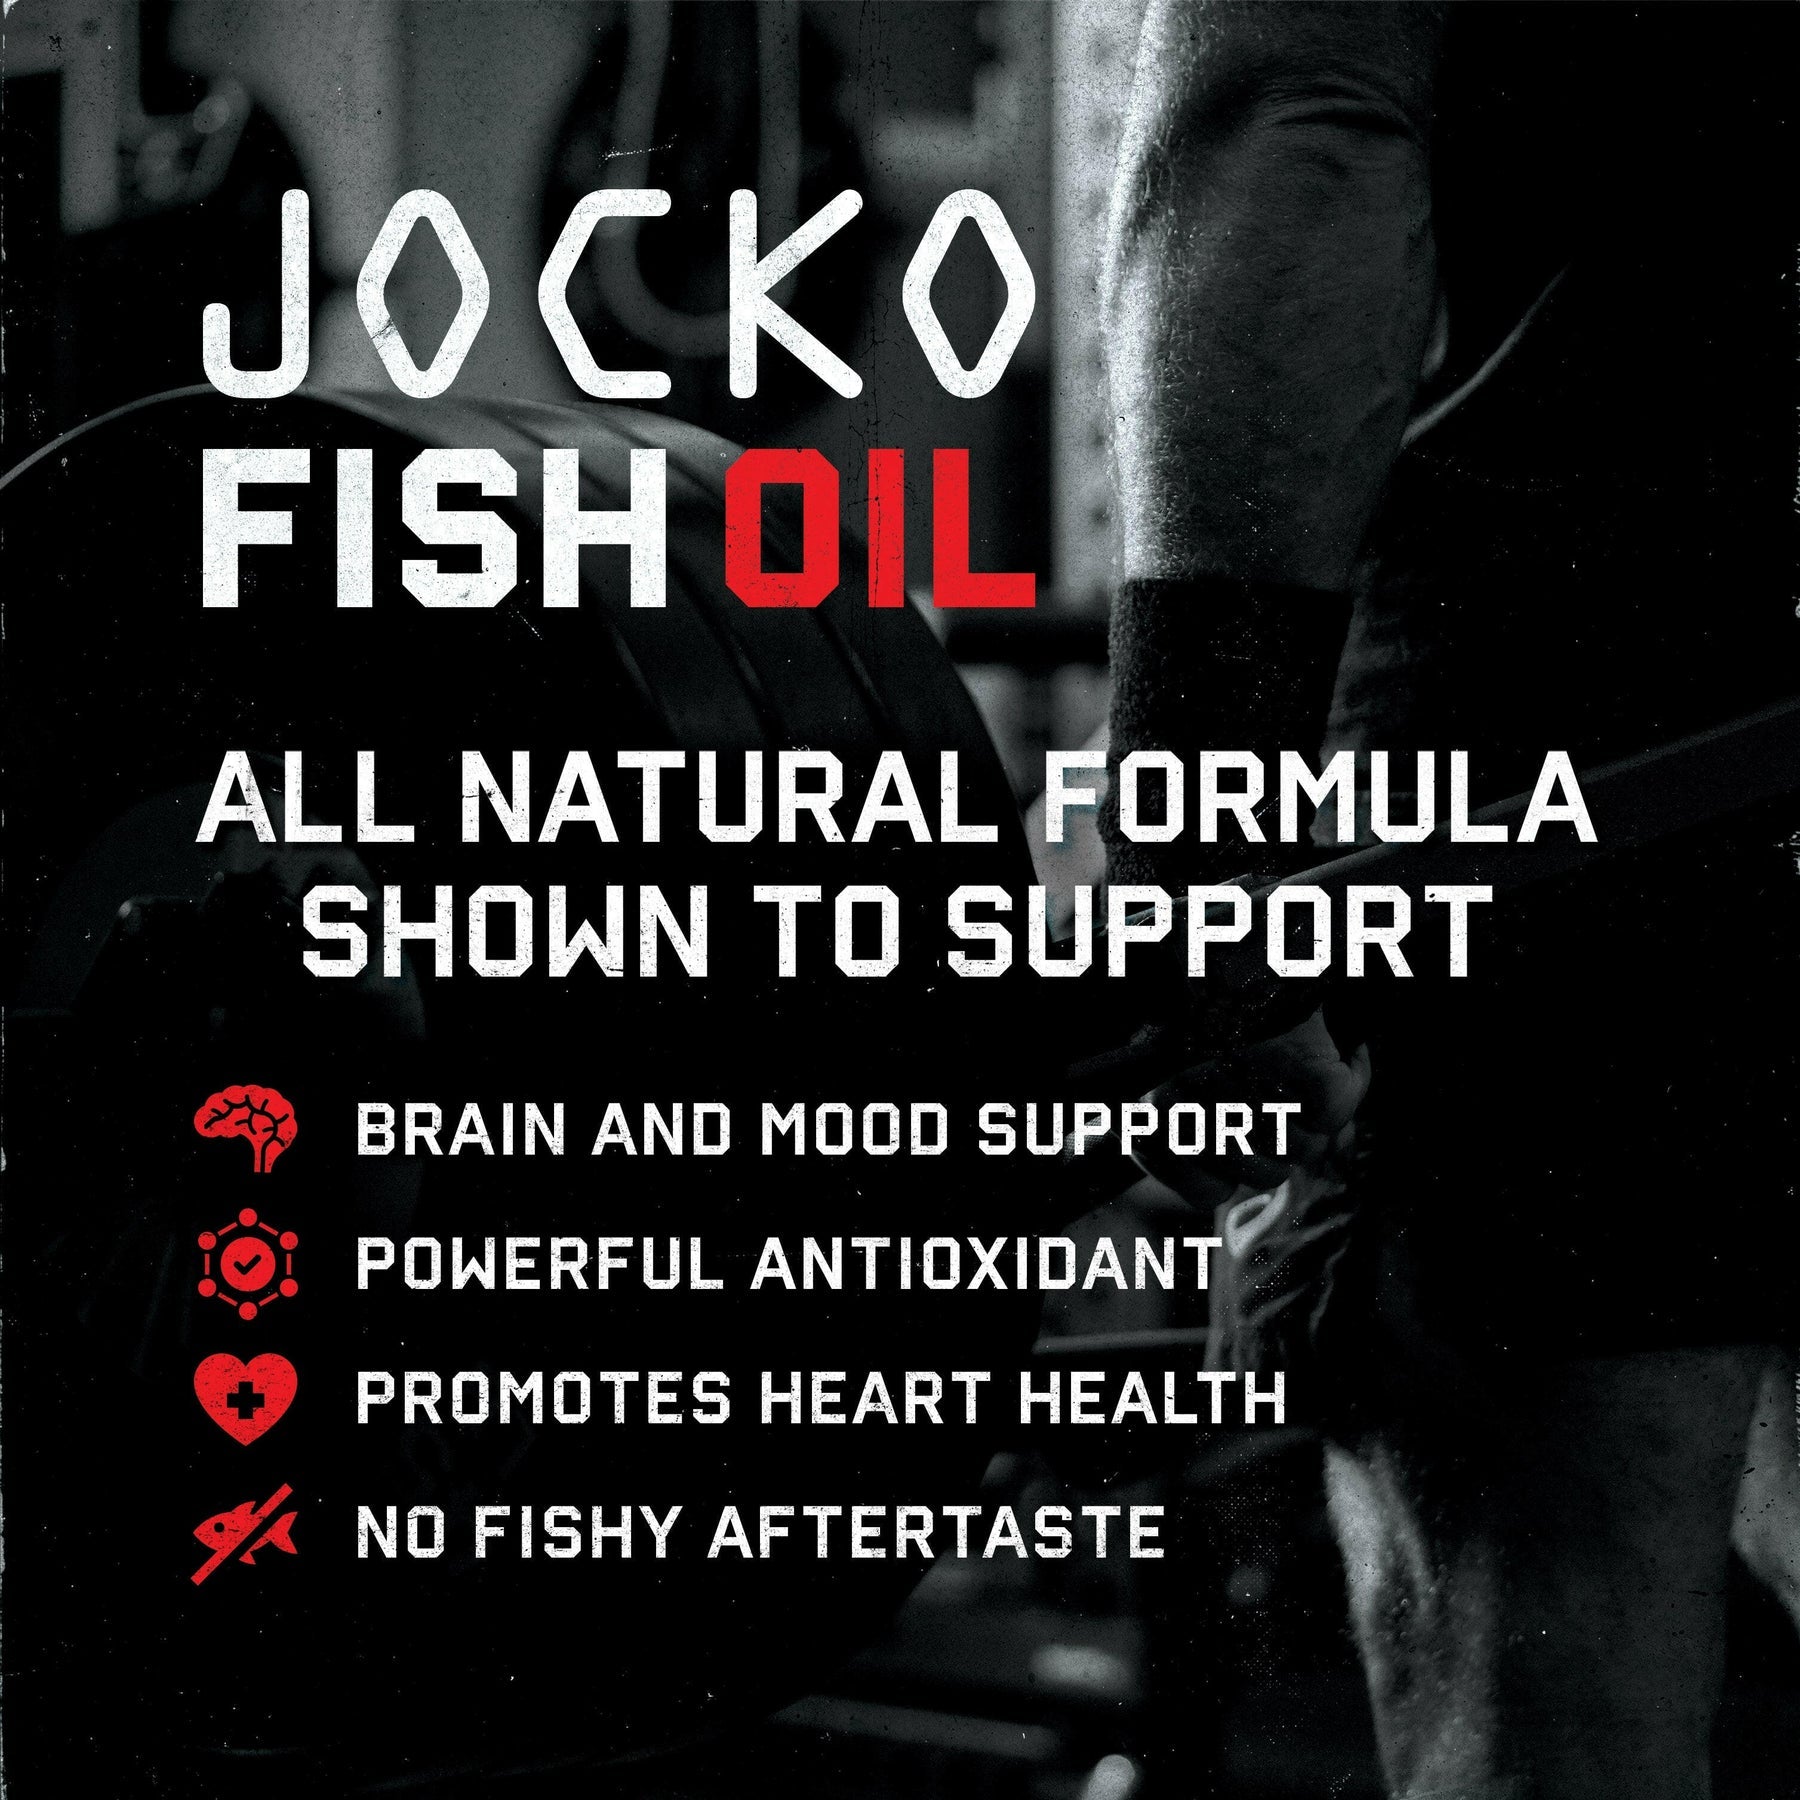 Jocko Fuel Fish Oil